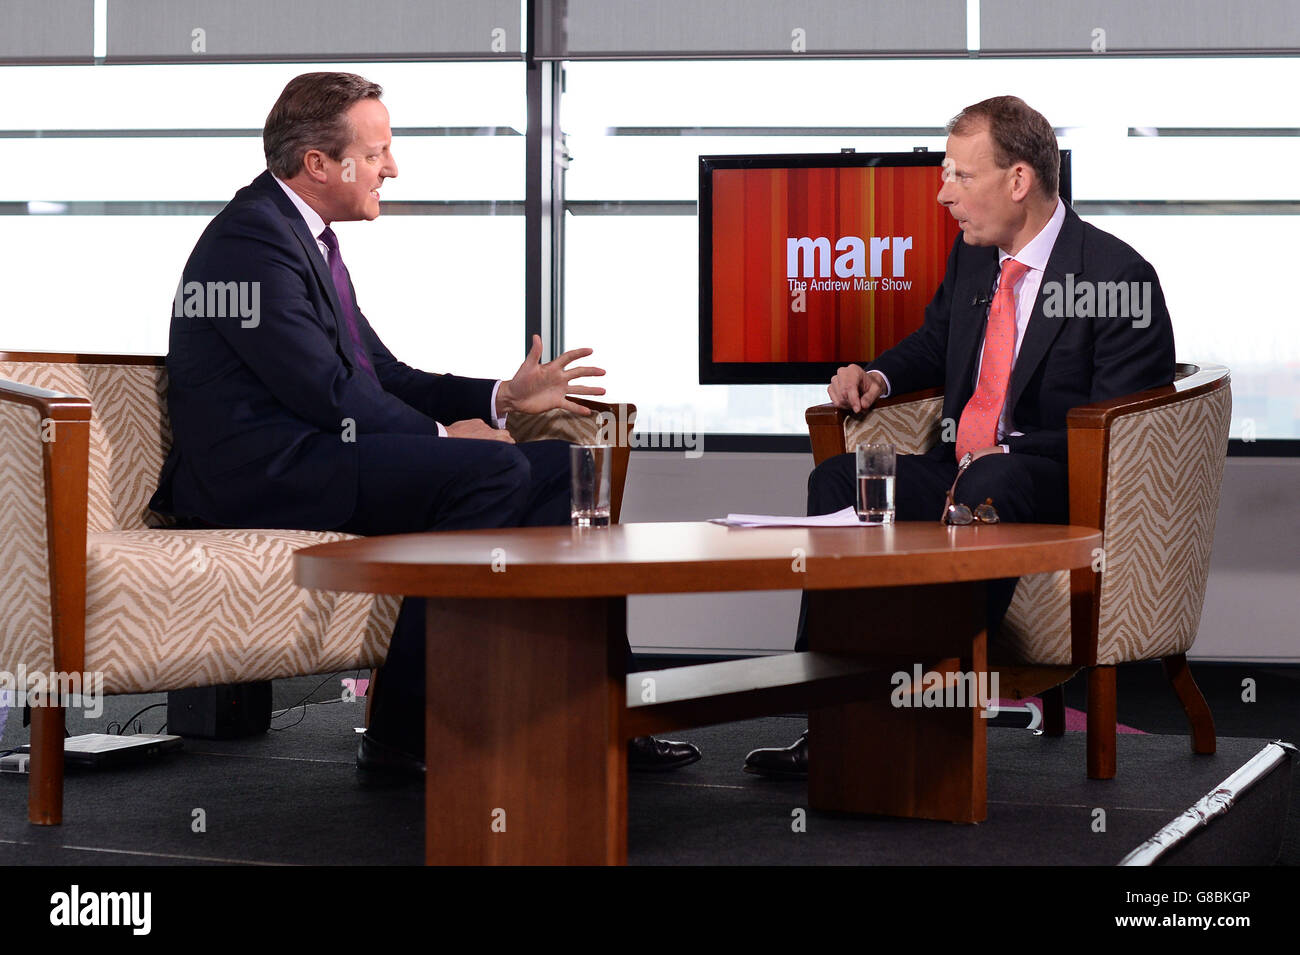 Le Premier ministre David Cameron (à gauche) est interviewé par Andrew Marr sur son programme d'affaires courantes BBC1 à Media City à Manchester, avant le début de la conférence annuelle du Parti conservateur. Banque D'Images